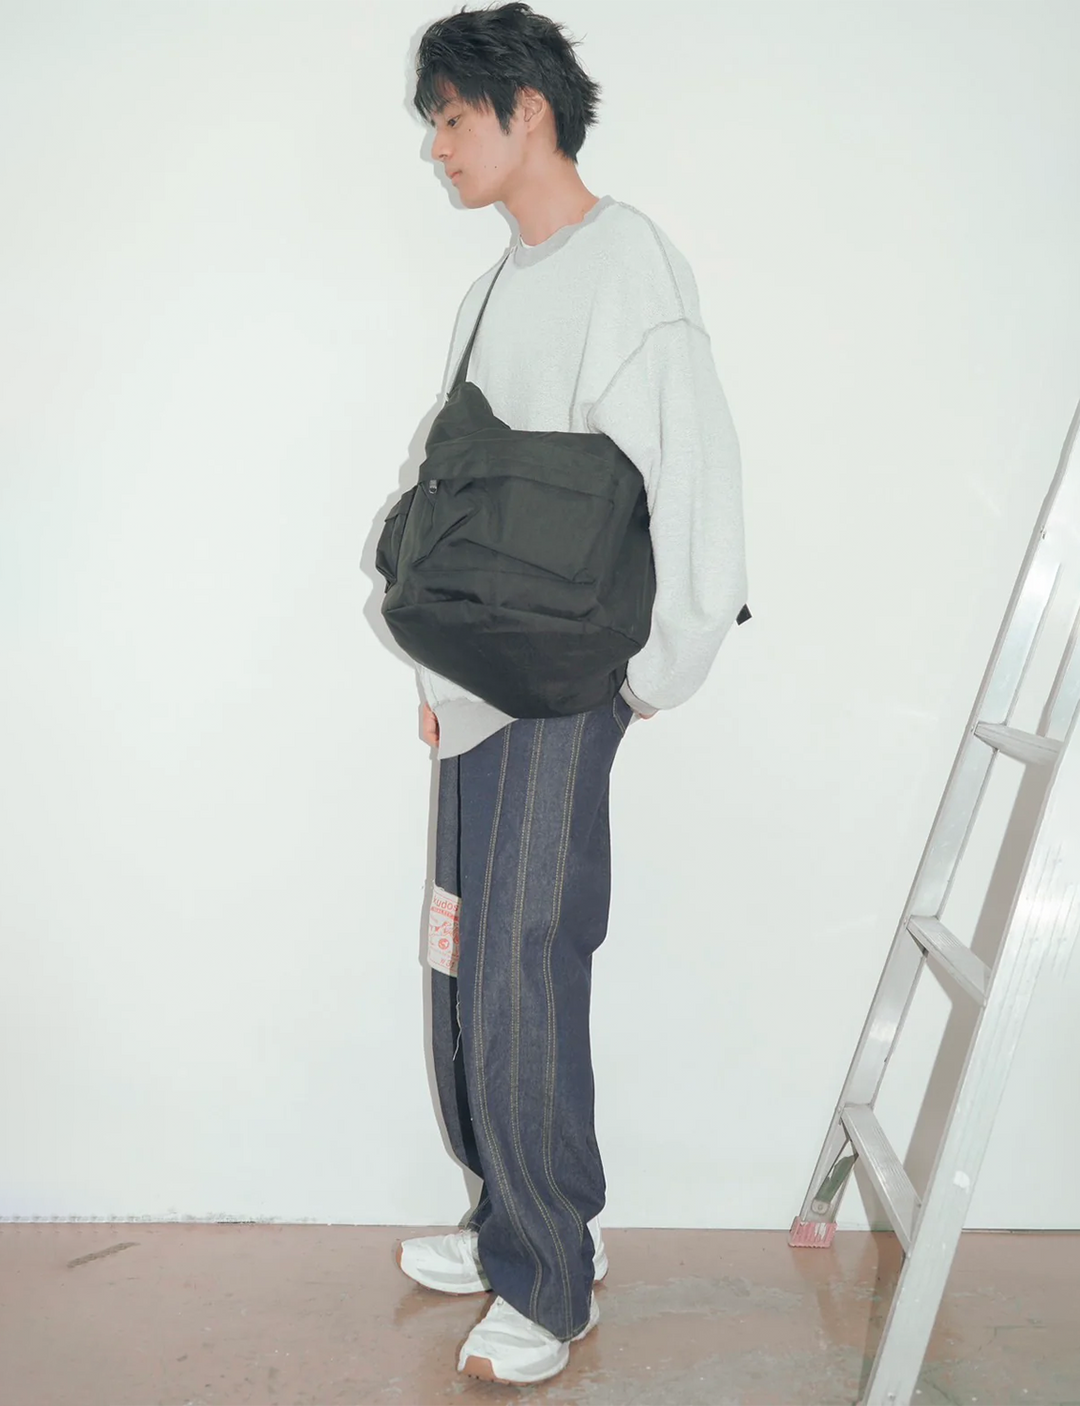 kudos - kudos body bag – The Contemporary Fix Kyoto